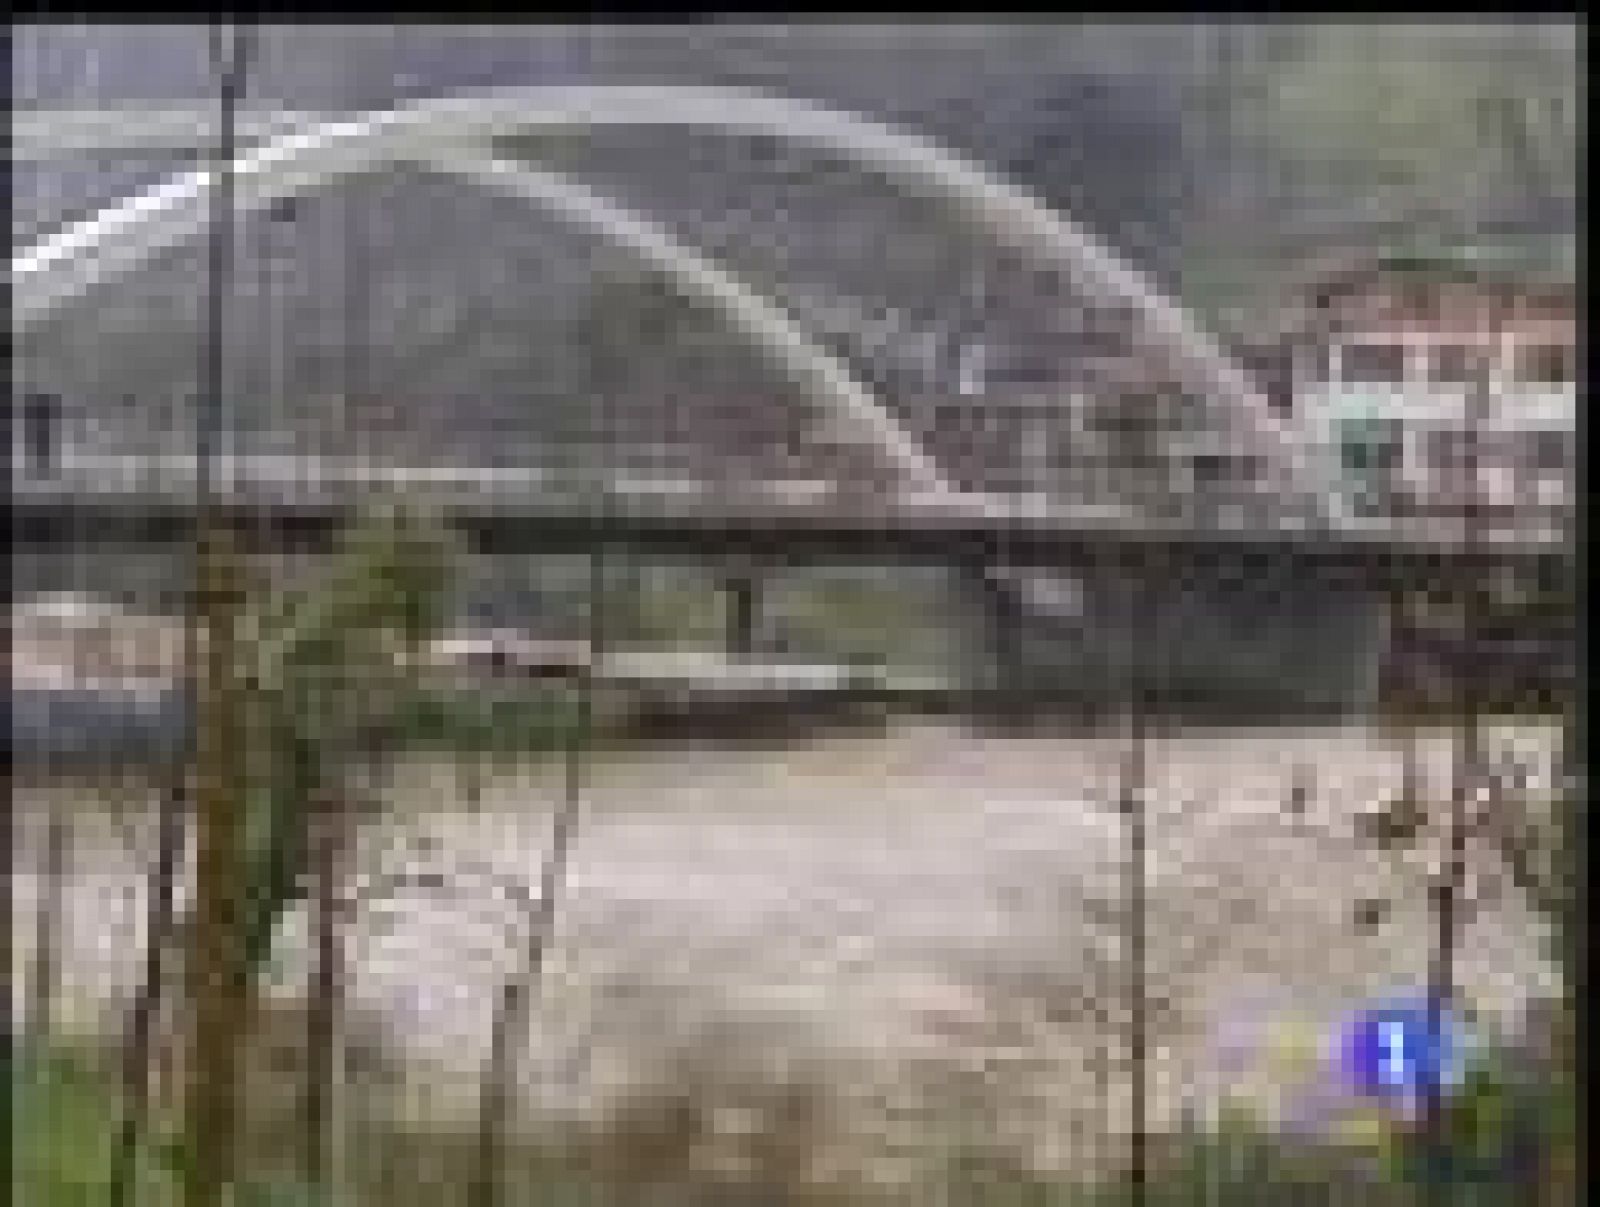 Hoy ha habido inundaciones en varios municpios de Vizcaya y el ayuntamiento de Bilbao ha decretado la alerta ante el riesgo de que la ría se desborde, aunque el gobierno vasco es más optimista.